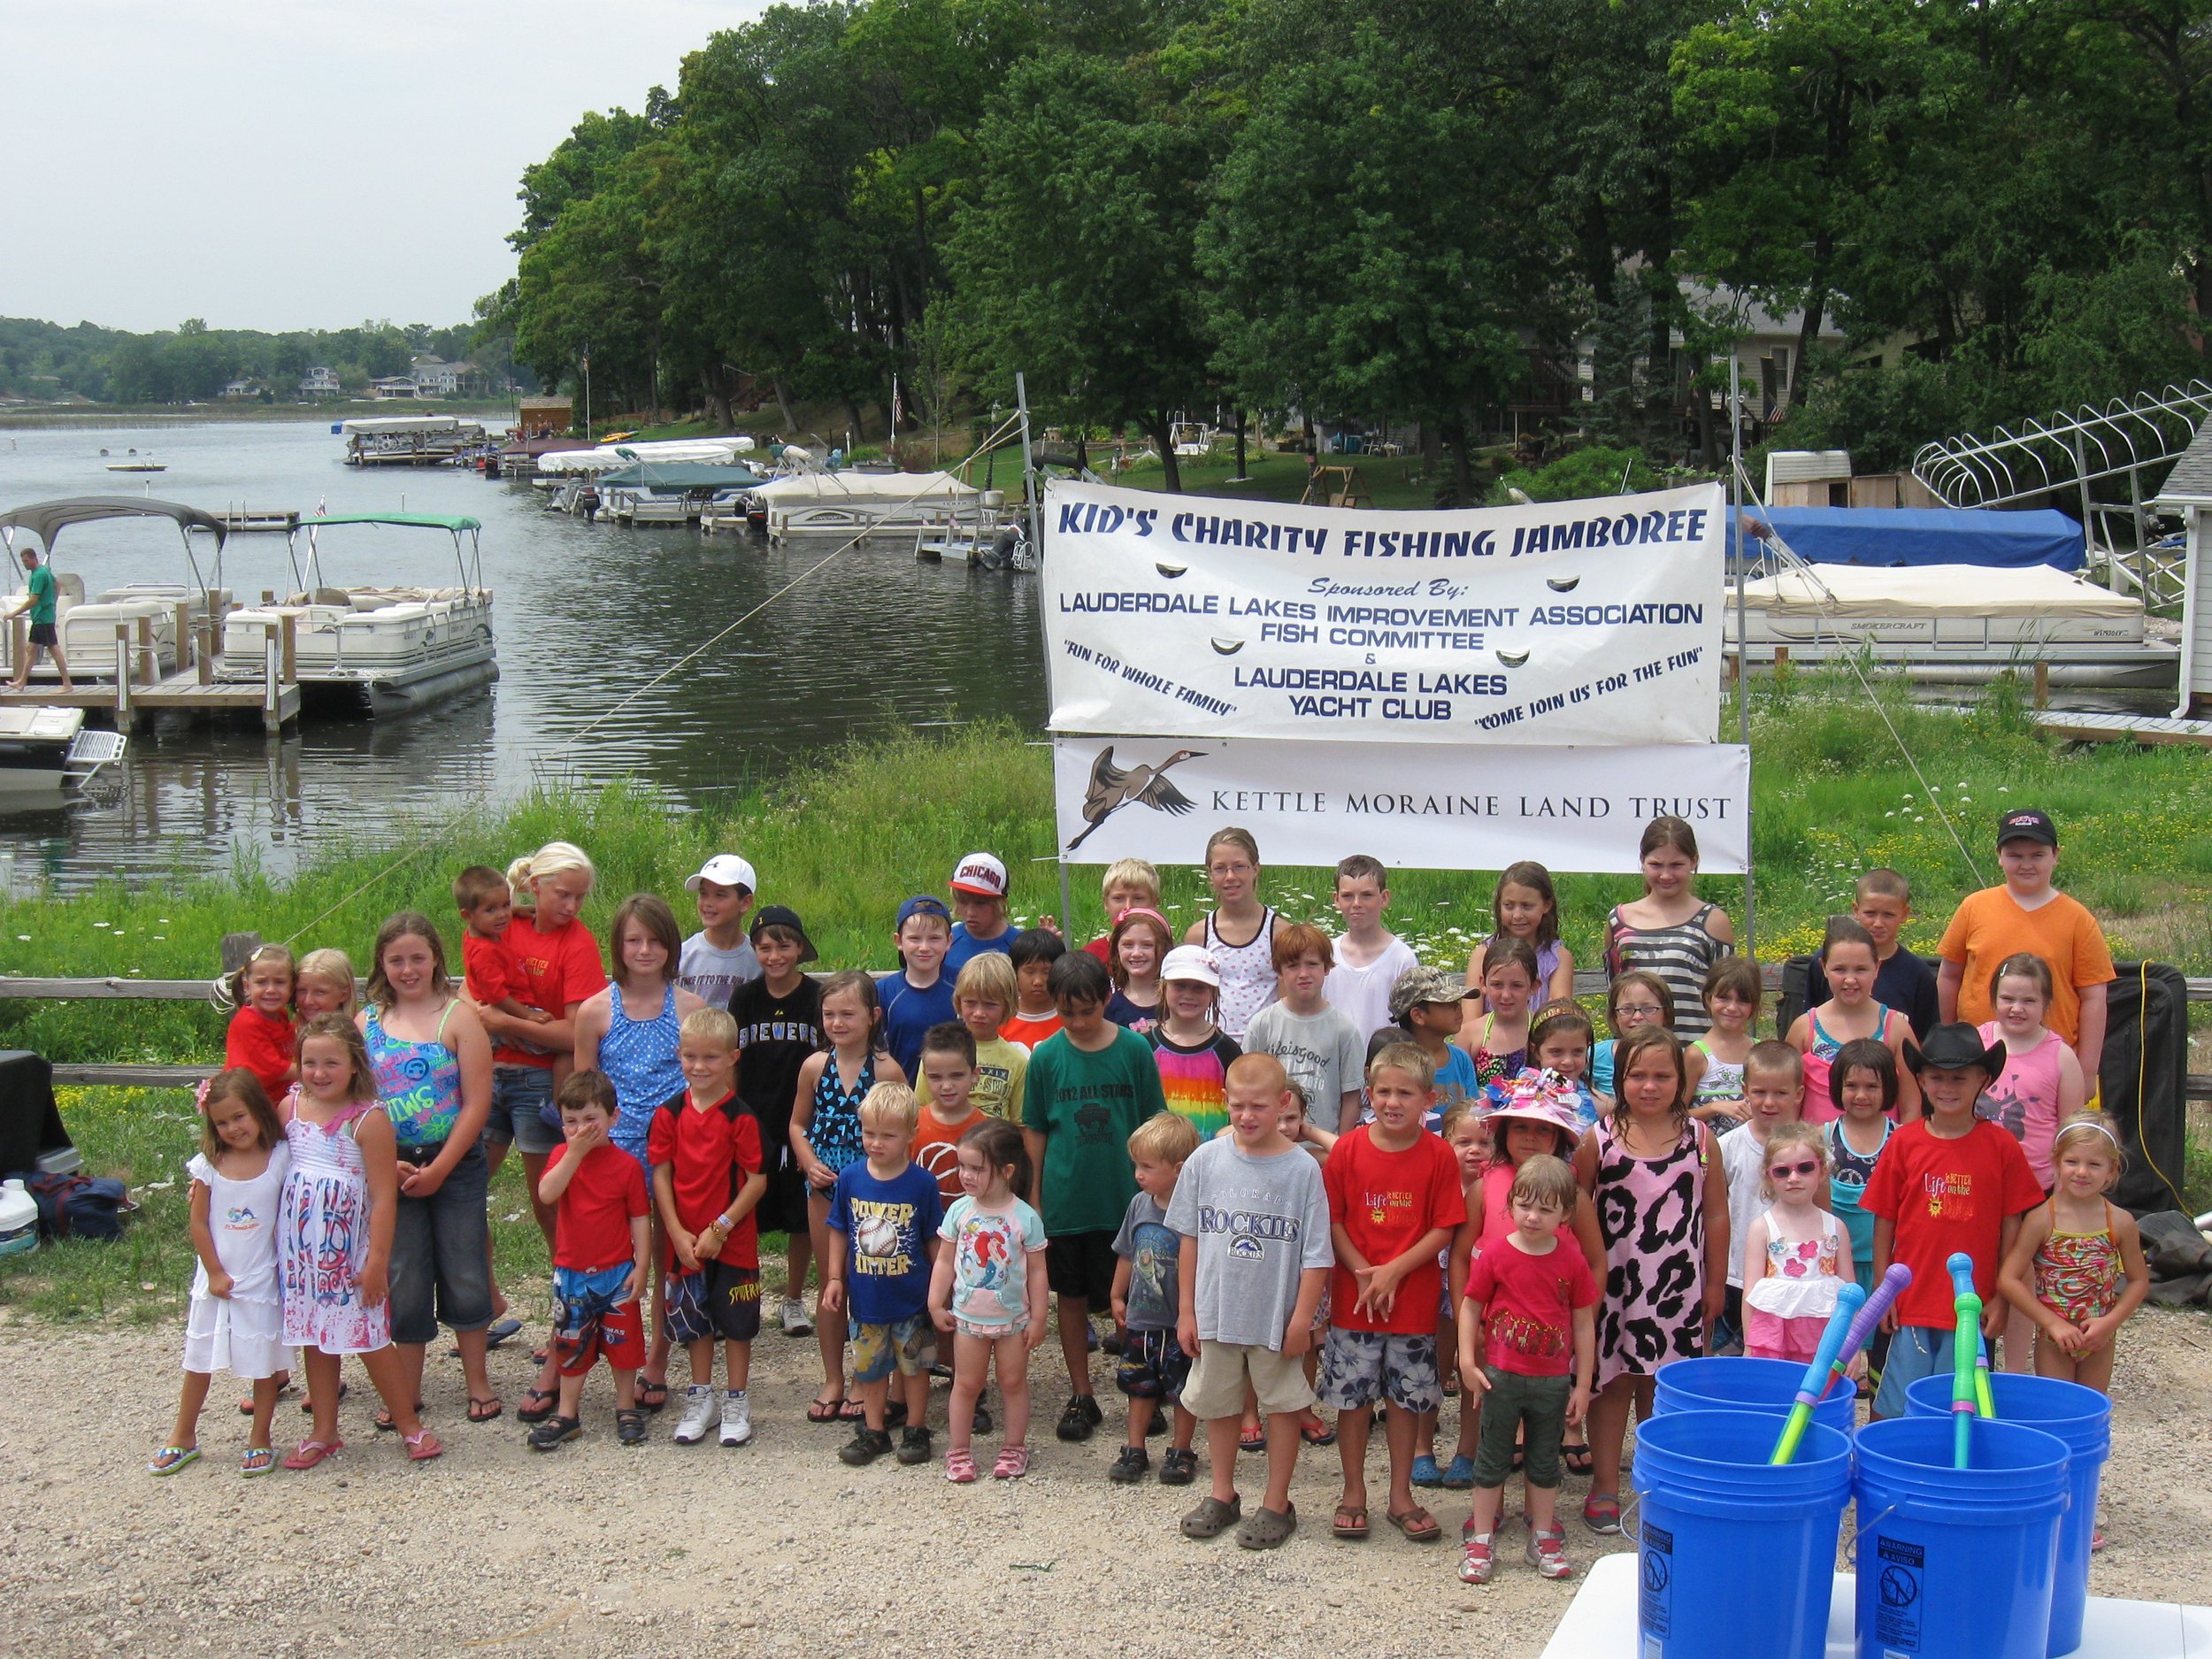 Kids Fishing Jamboree on July 16, 2022